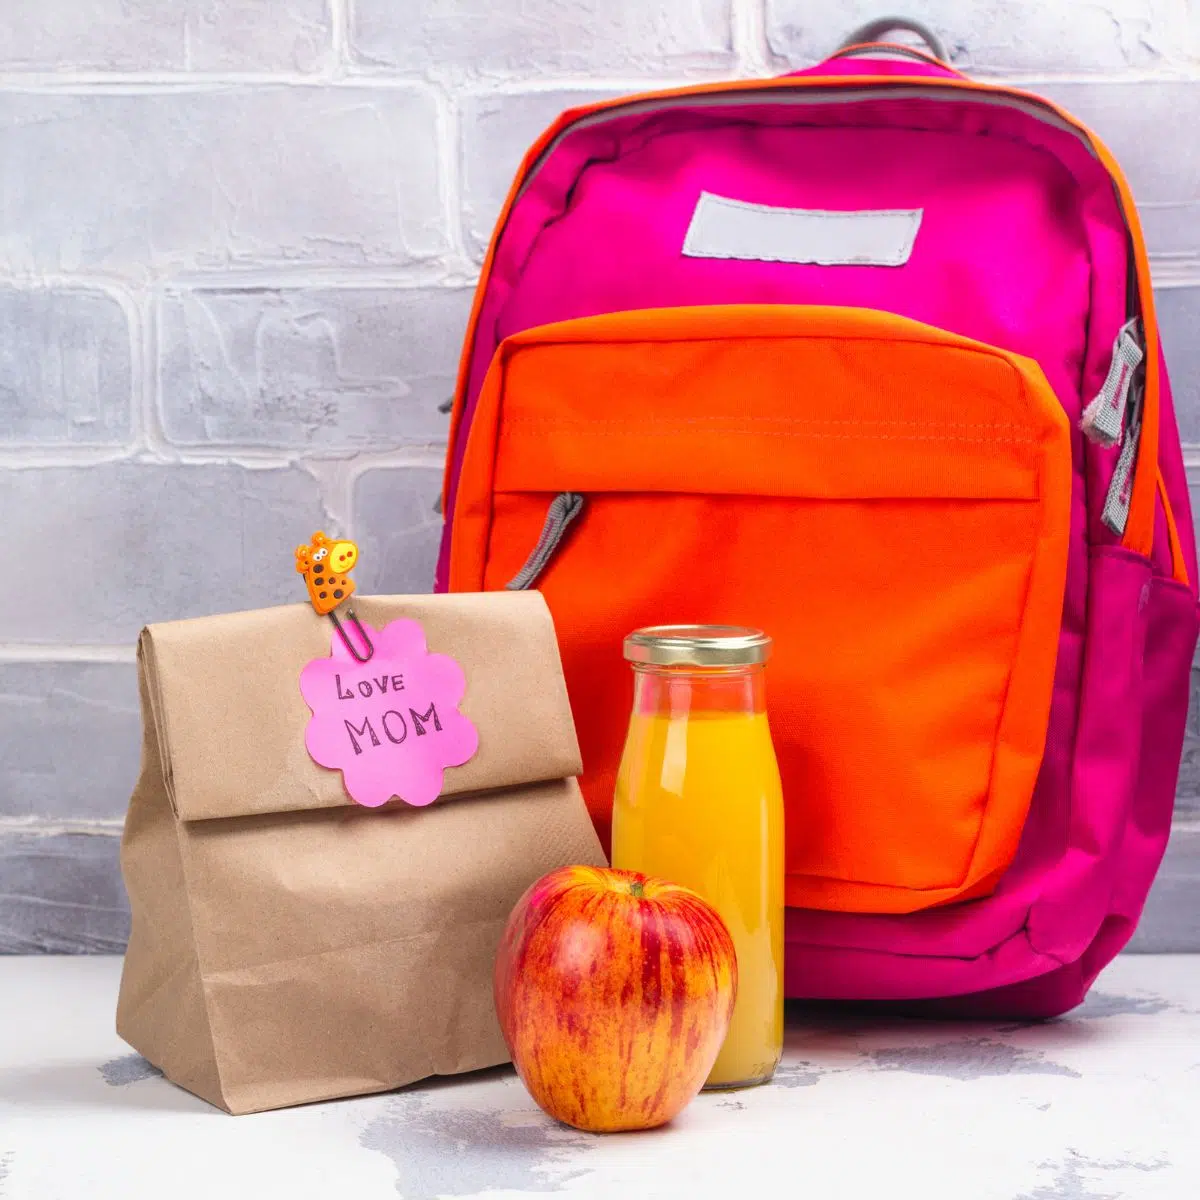 Kvadratna slika dječjeg ruksaka i torbe za ručak.